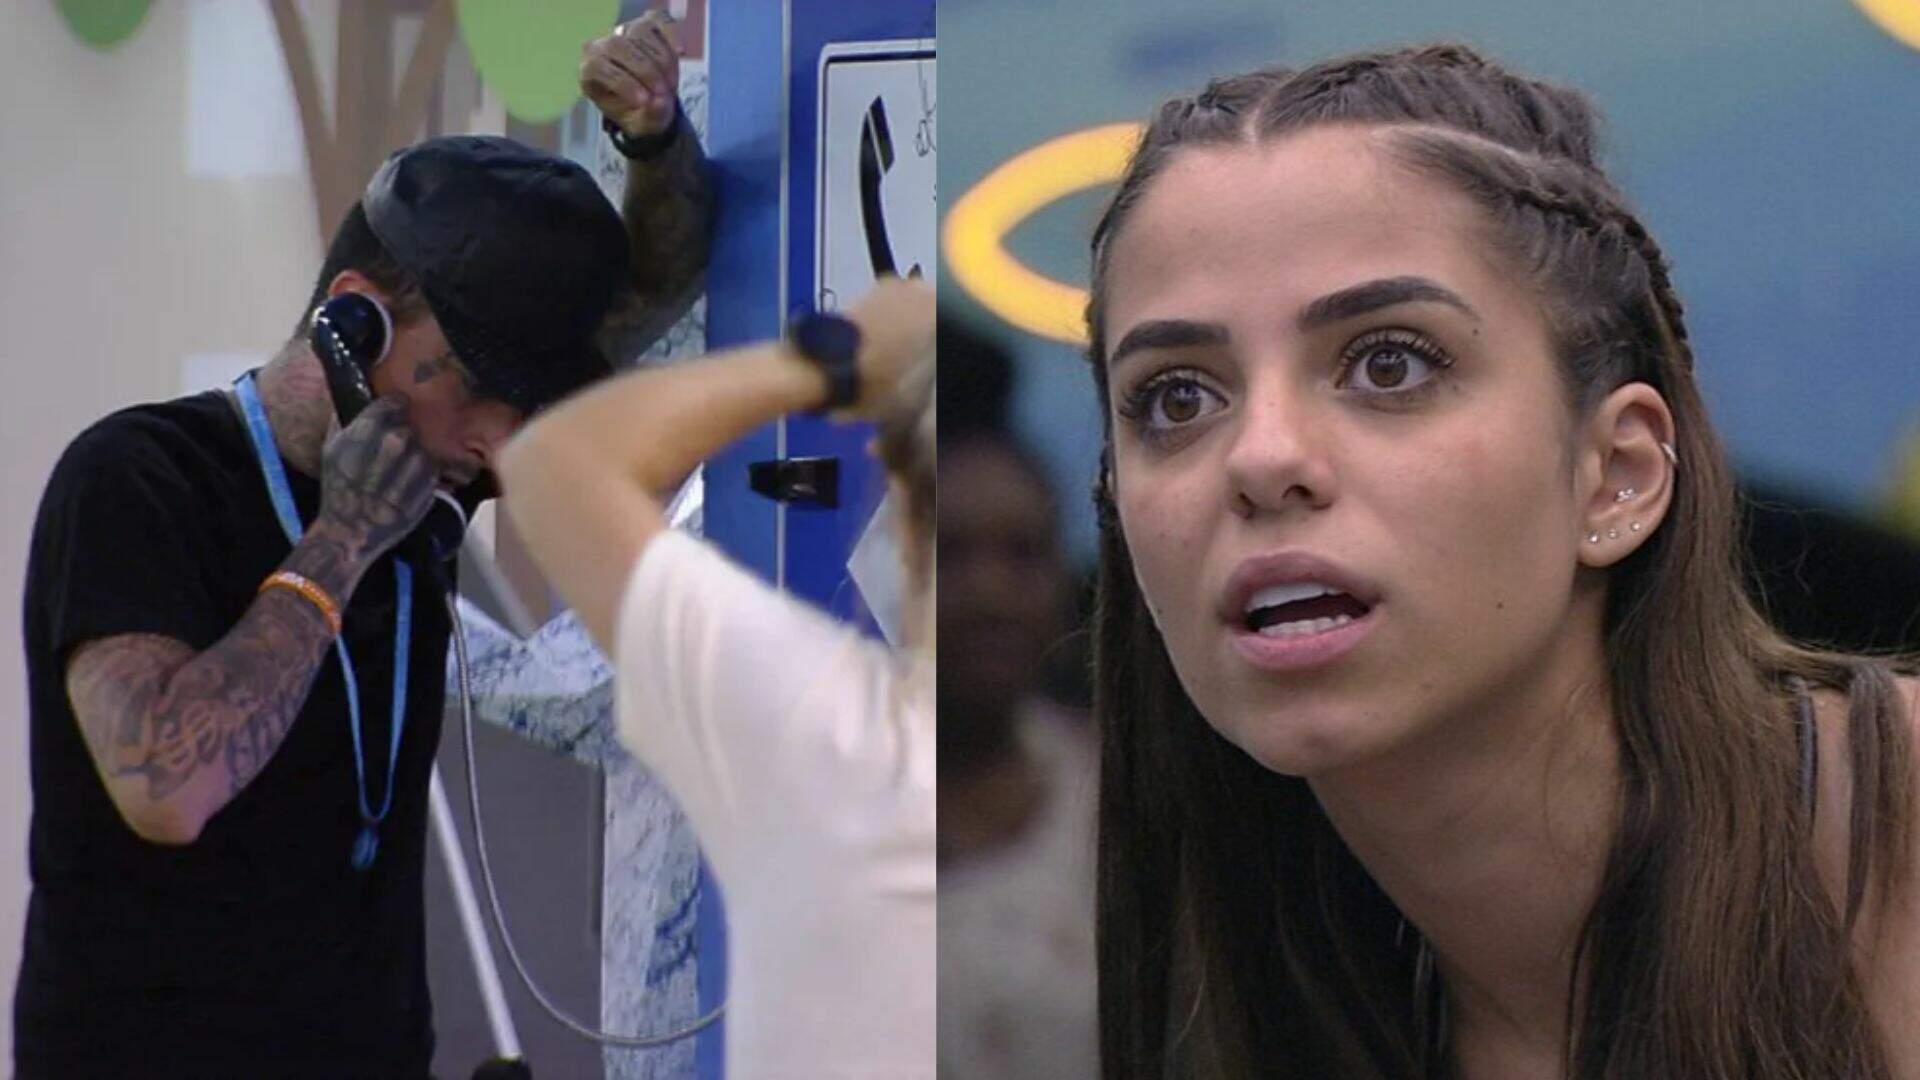 BBB 23: Indicada ao paredão após Big Fone, Key Alves reage à decisão de MC Guimê: “Toda hora” - Metropolitana FM